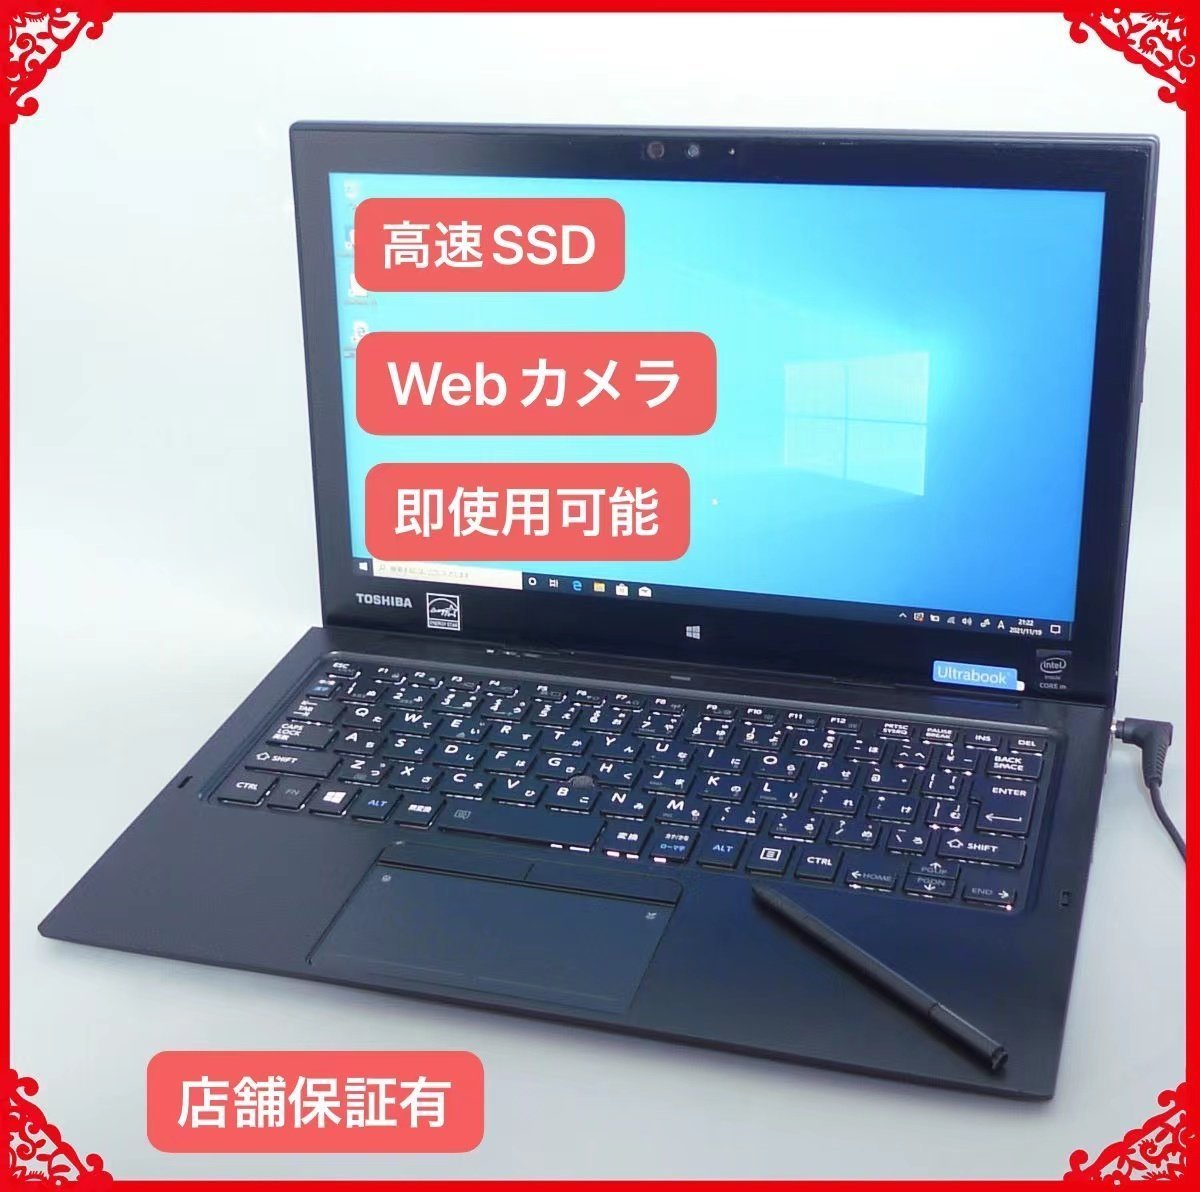 送料無料 激安セール 在庫処分 SSD タブレット ノートパソコン 中古良品 12型 東芝 R82/P Core M 4GB 無線 Bluetooth Windows10 Office